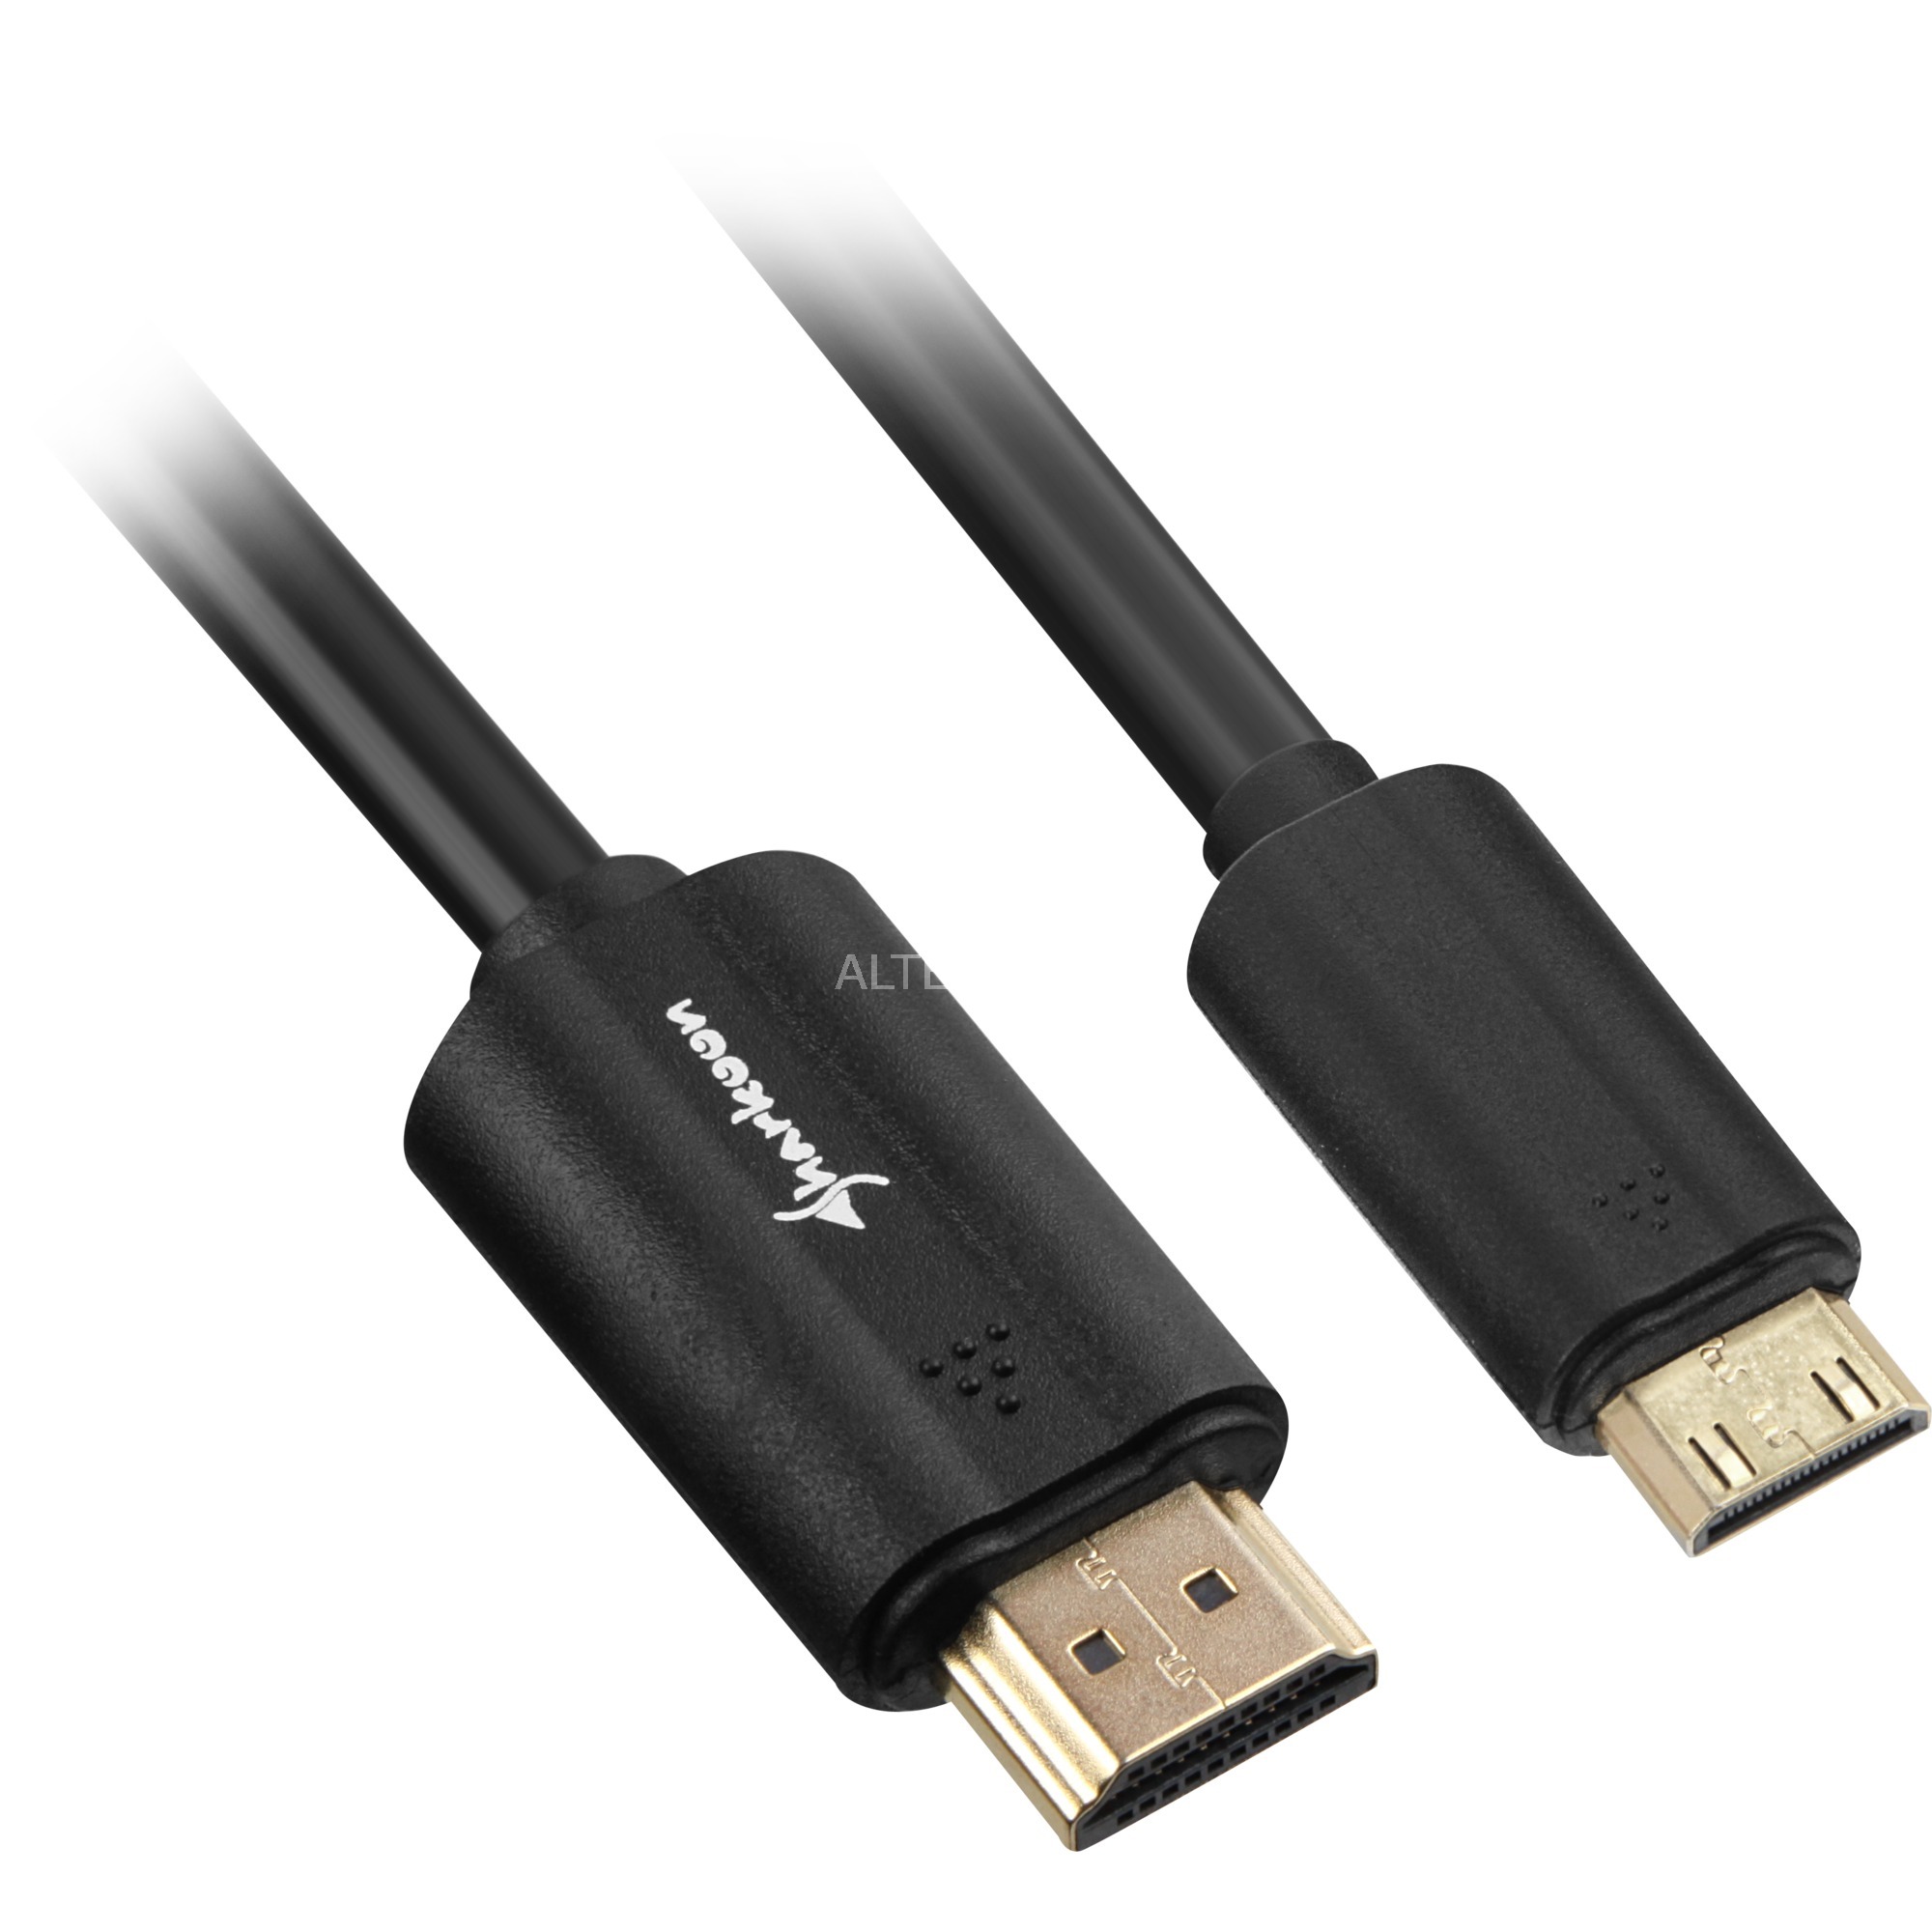 Image of Alternate - Adapterkabel HDMI Stecker > mini HDMI Stecker online einkaufen bei Alternate